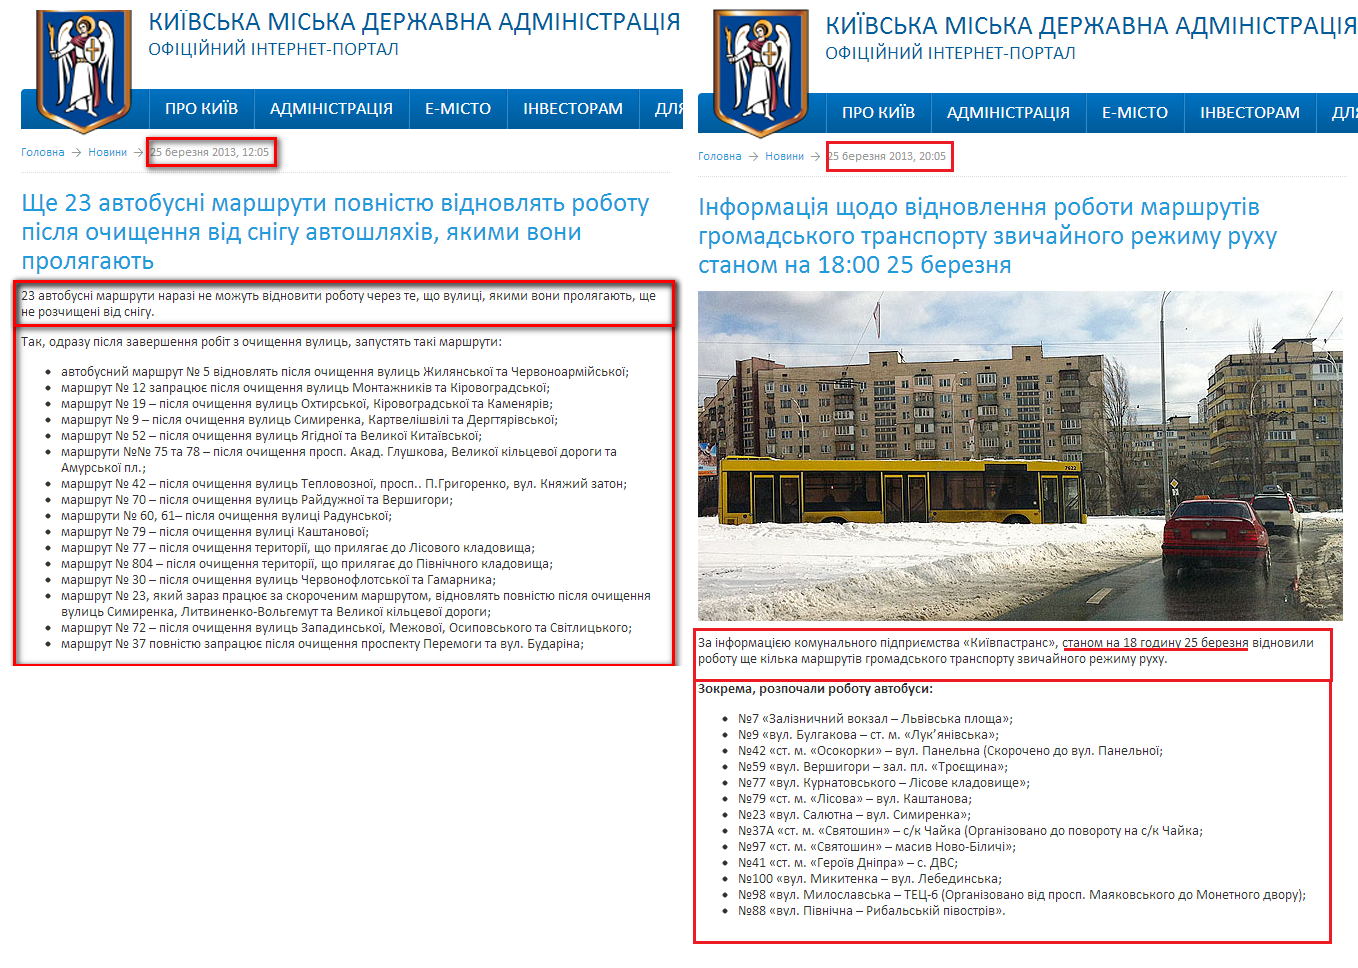 http://kievcity.gov.ua/news/6131.html